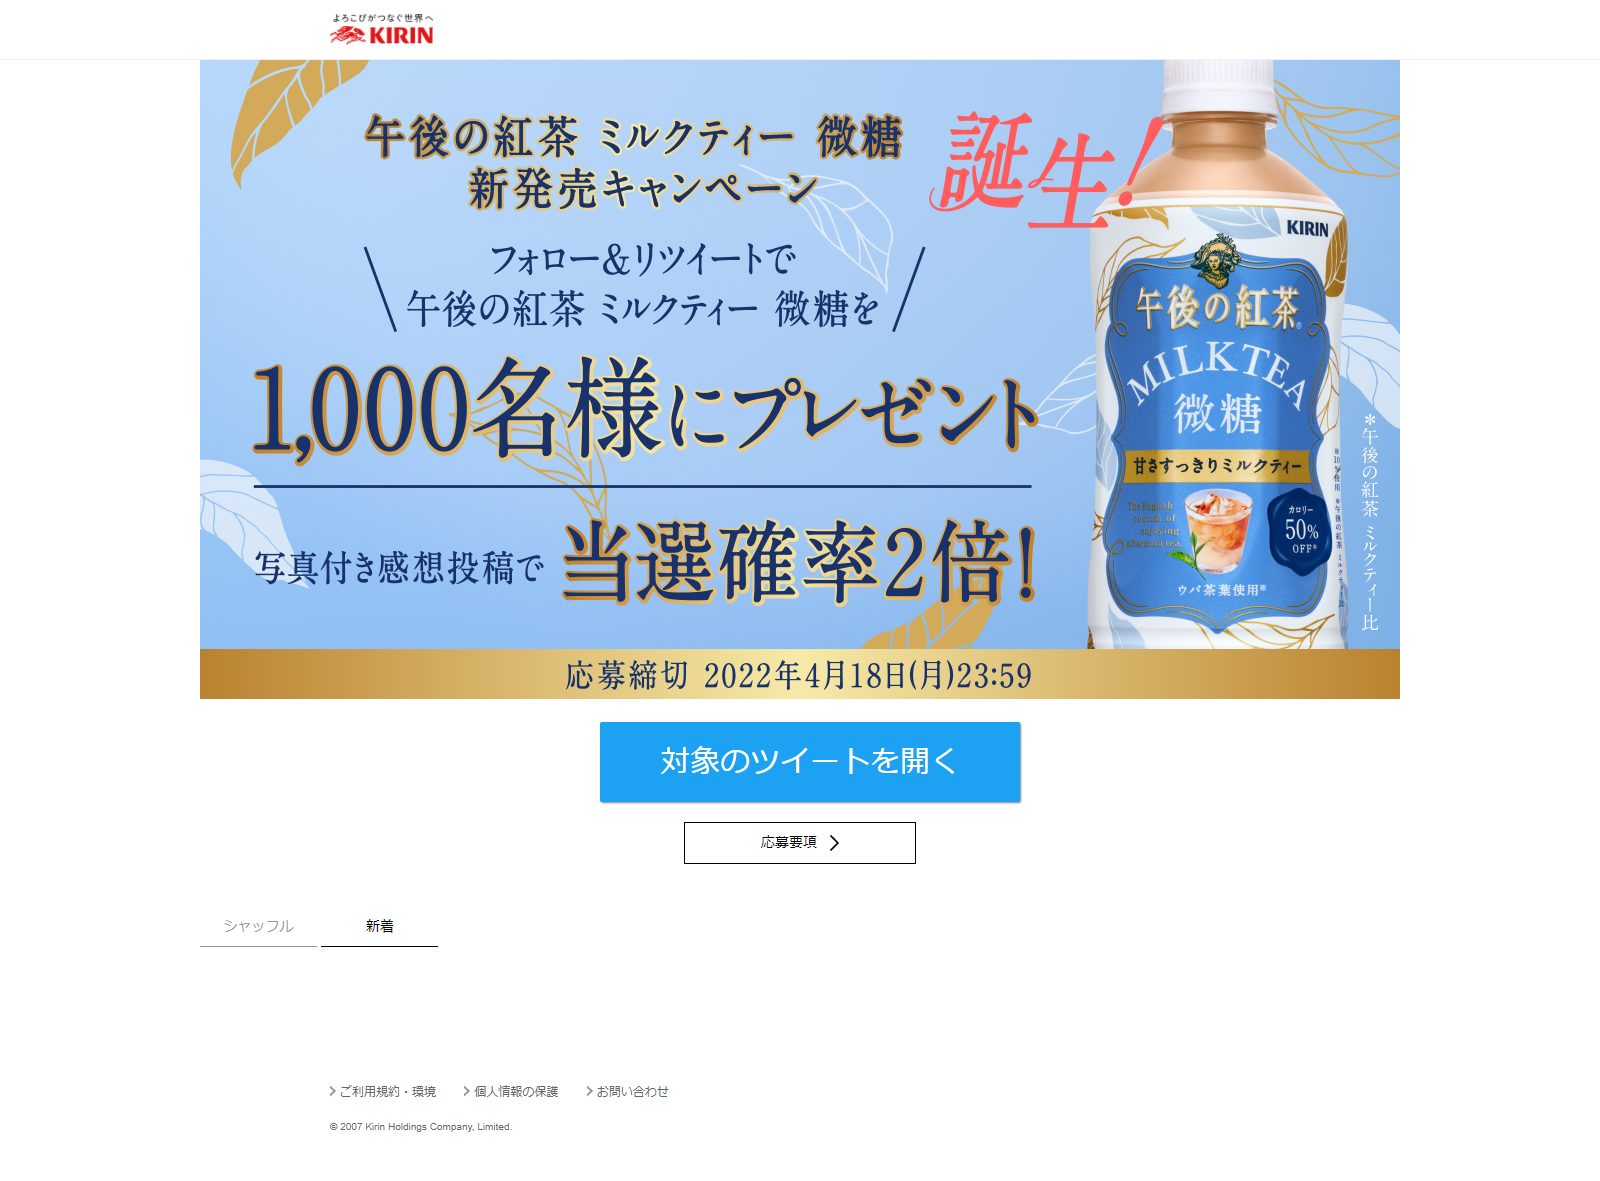 午後の紅茶 ミルクティー微糖 新発売キャンペーン | キャンなび【WEBキャンペーンまとめサイト】